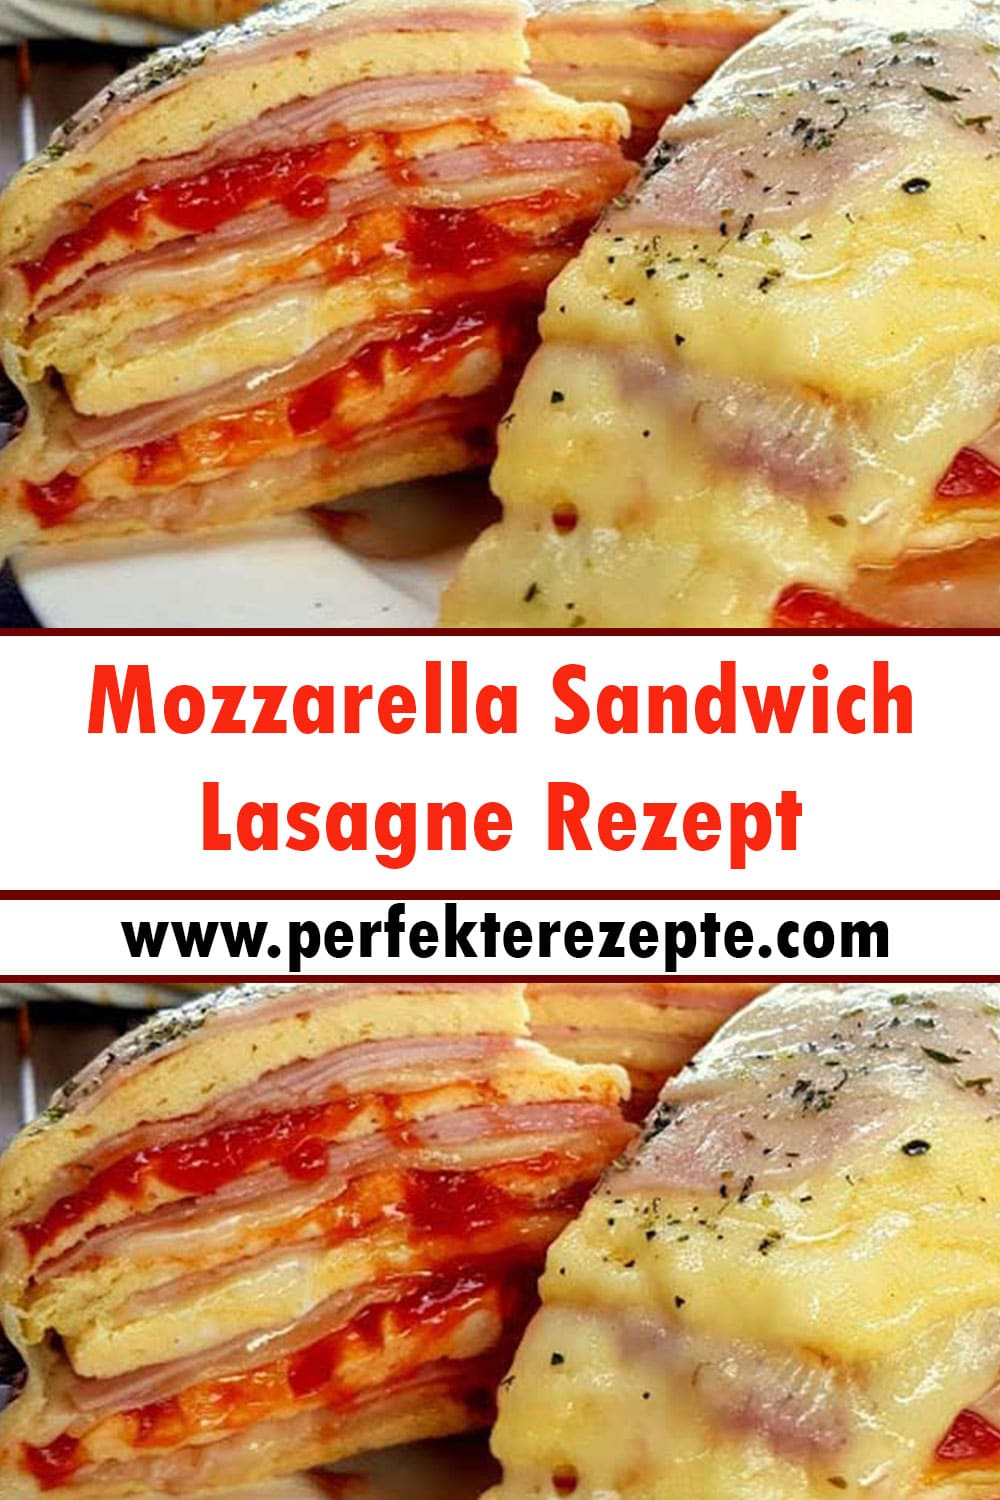 Mozzarella Sandwich Lasagne Rezept